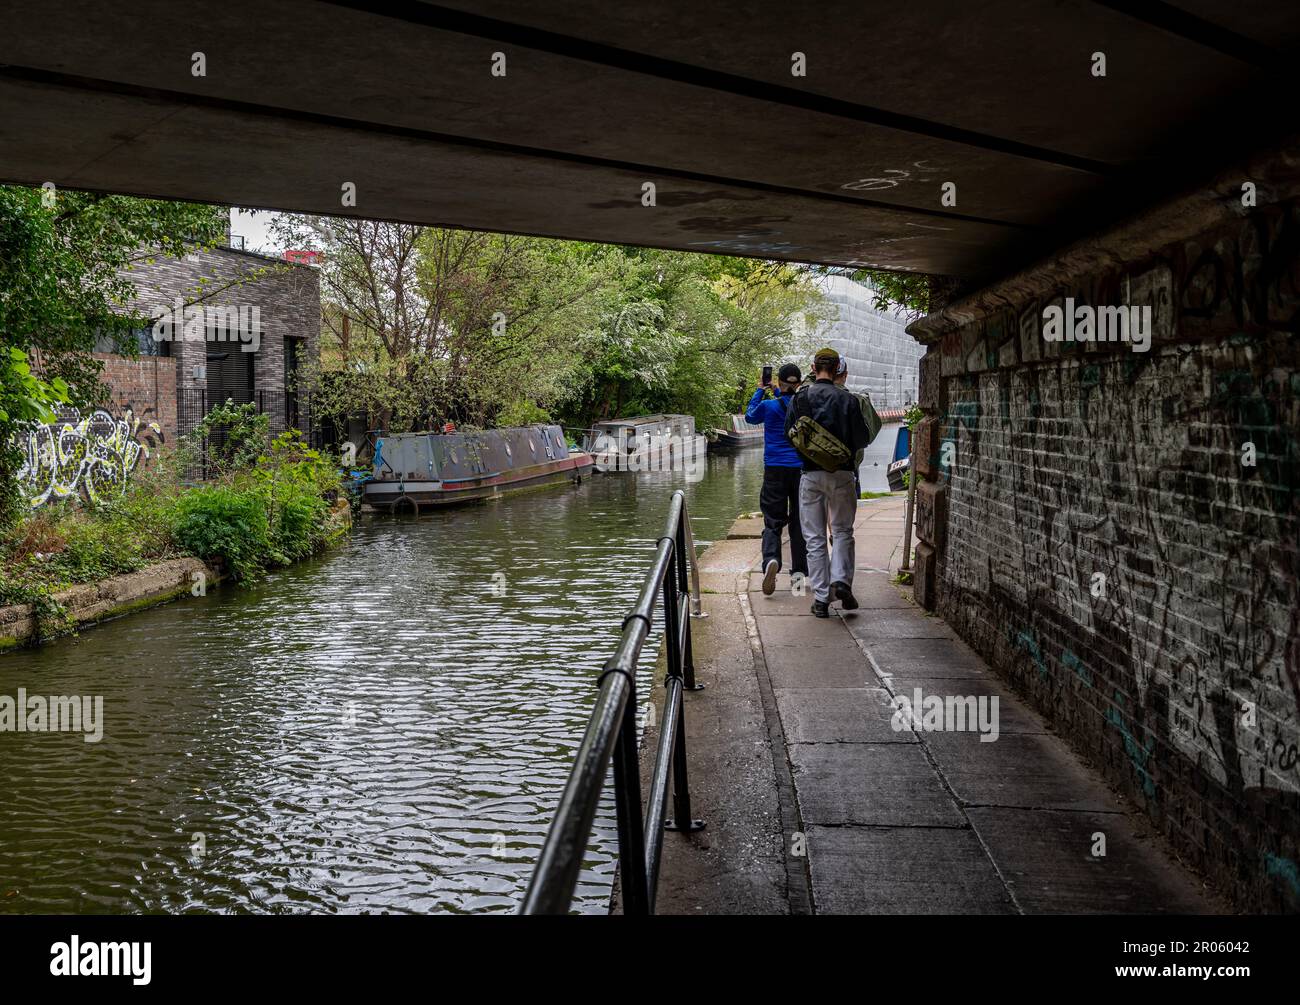 Londra. UK- 05.04.2023. L'alzaia del Regent's Canal con persone che si impegnano in attività ricreative come il ciclismo, passeggiate e visite turistiche. Foto Stock